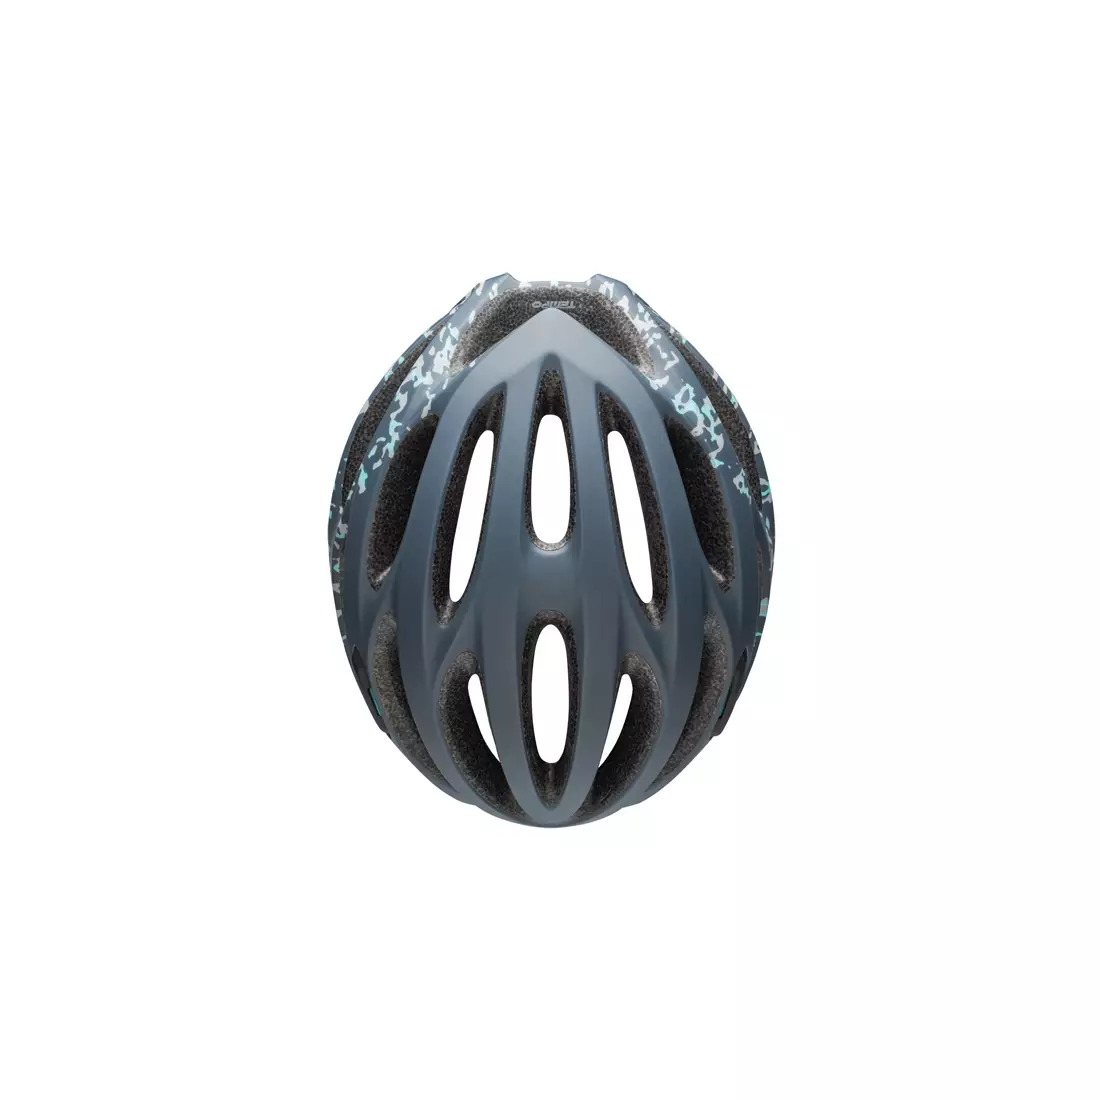 BELL TEMPO JOY RIDE - BEL-7088767 dámská cyklistická přilba matný olověný kámen